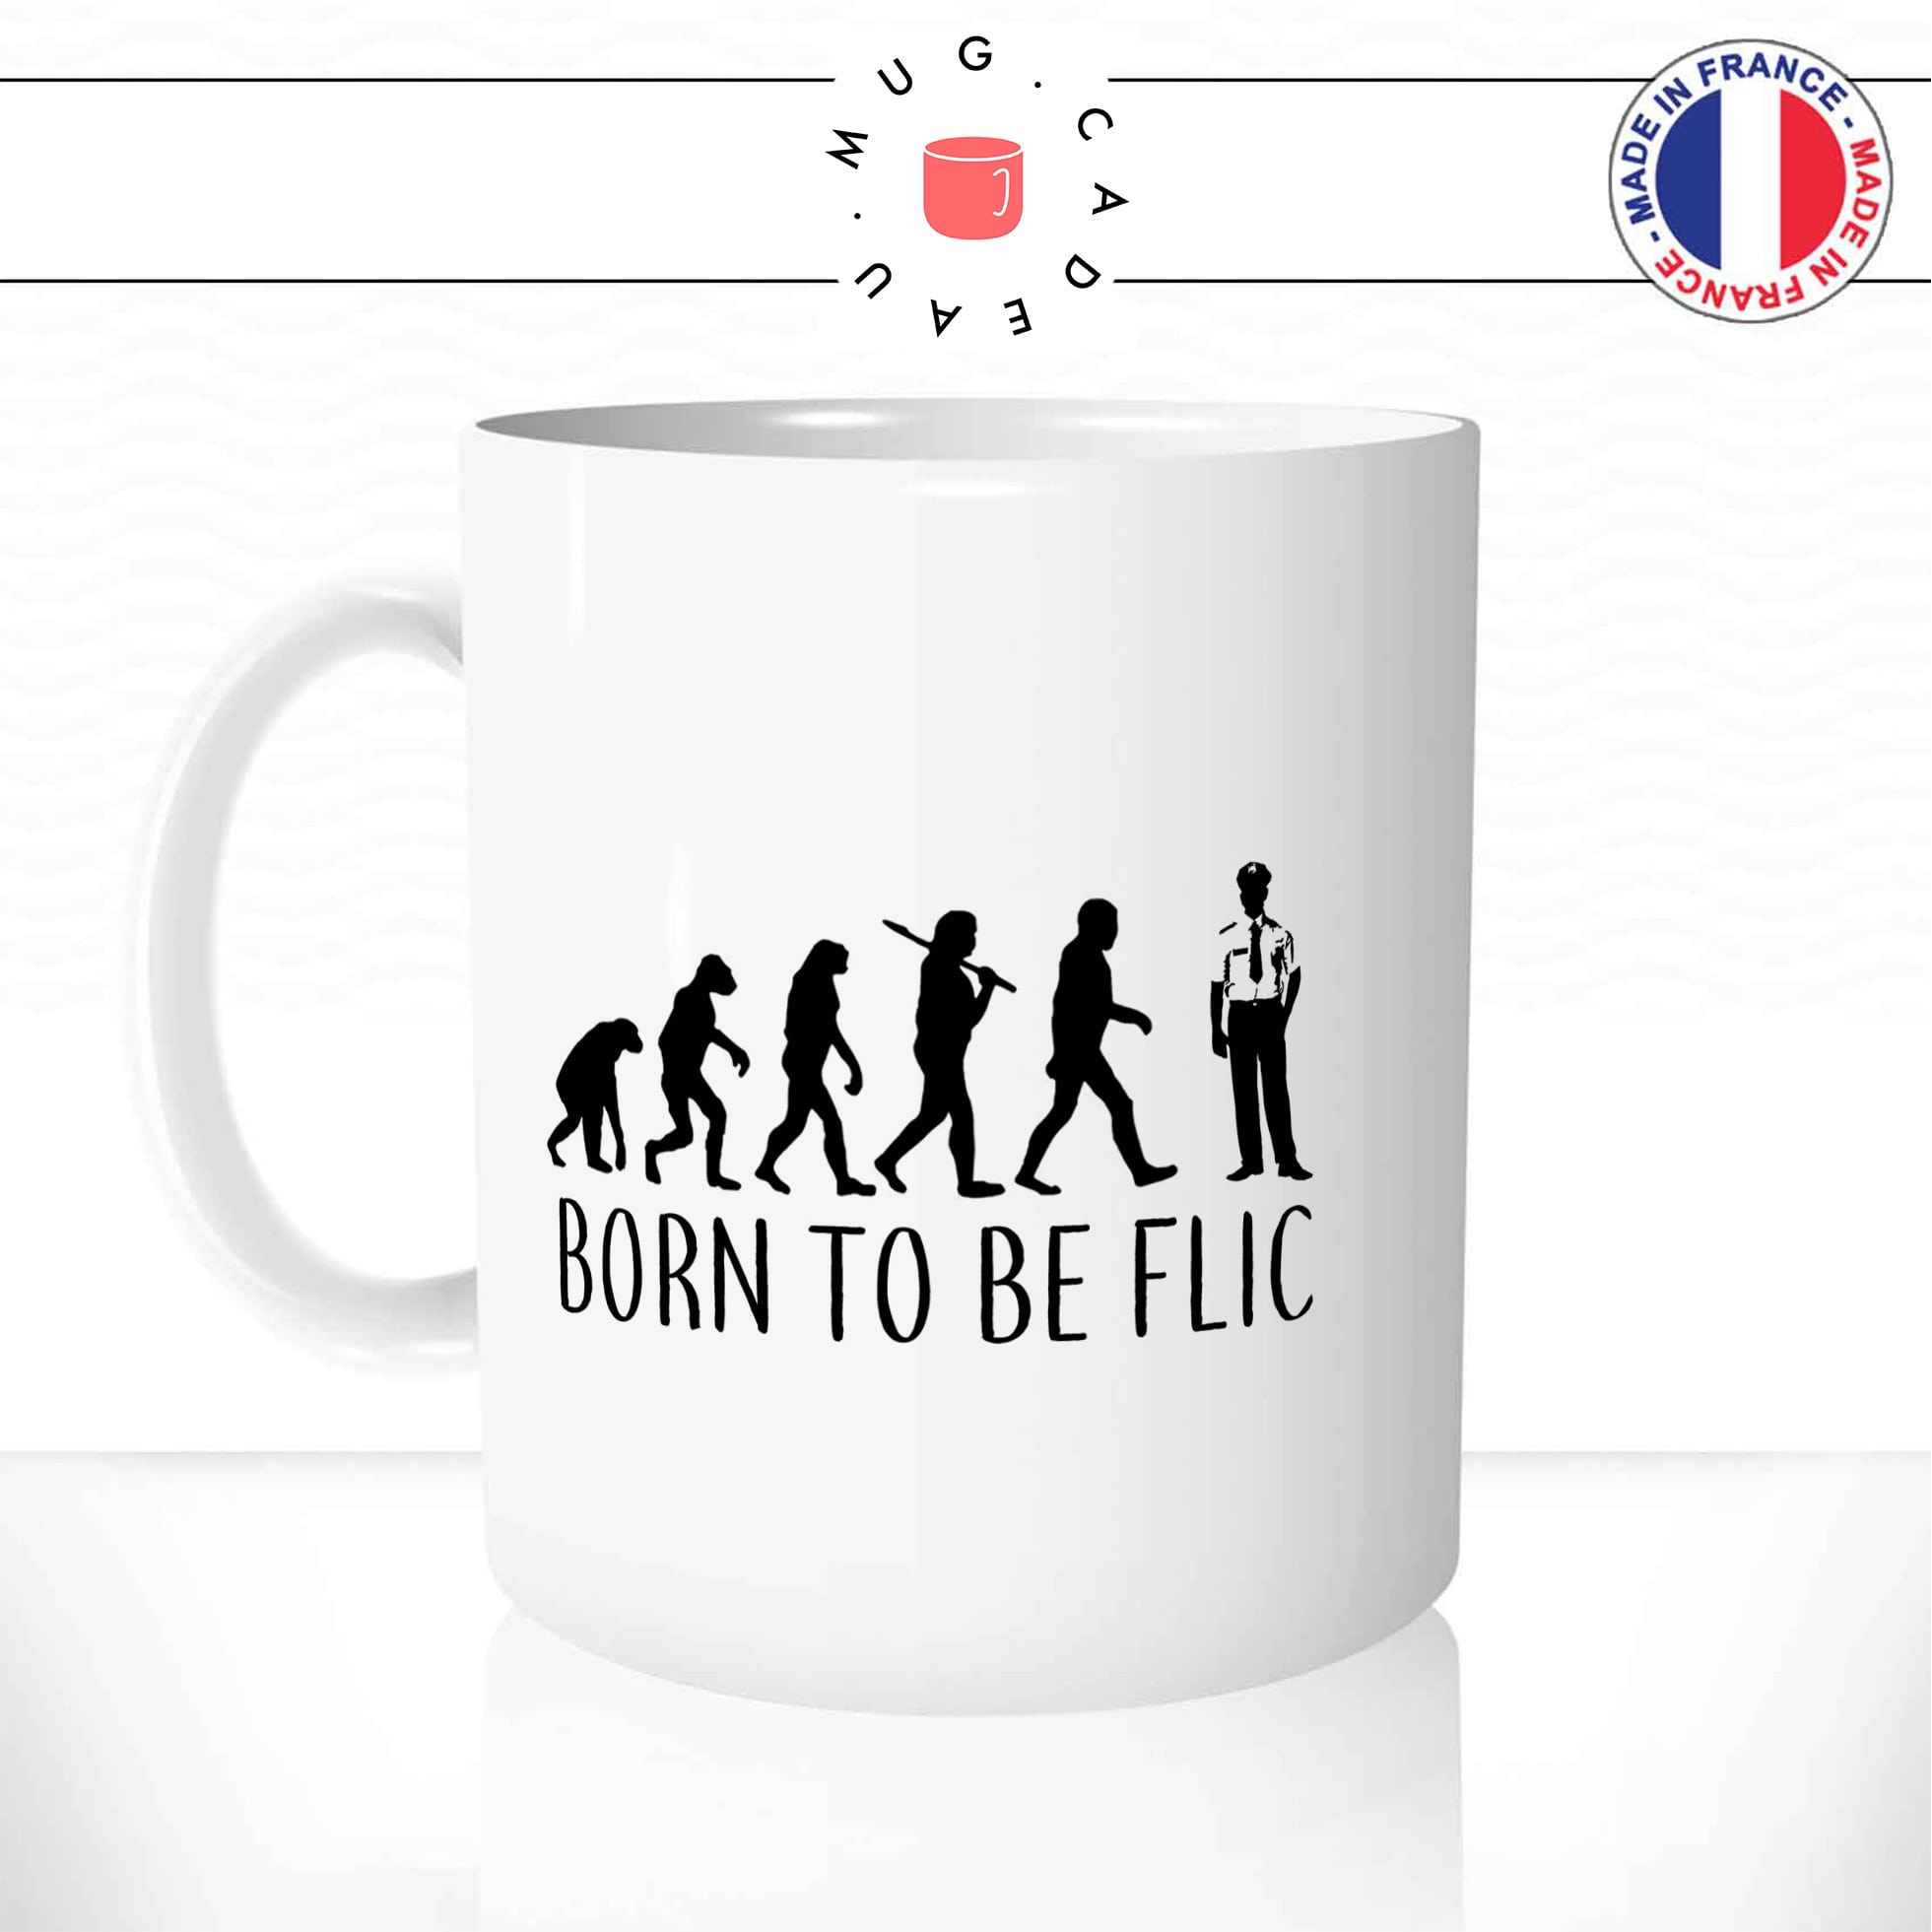 Mug Born To Be Flic